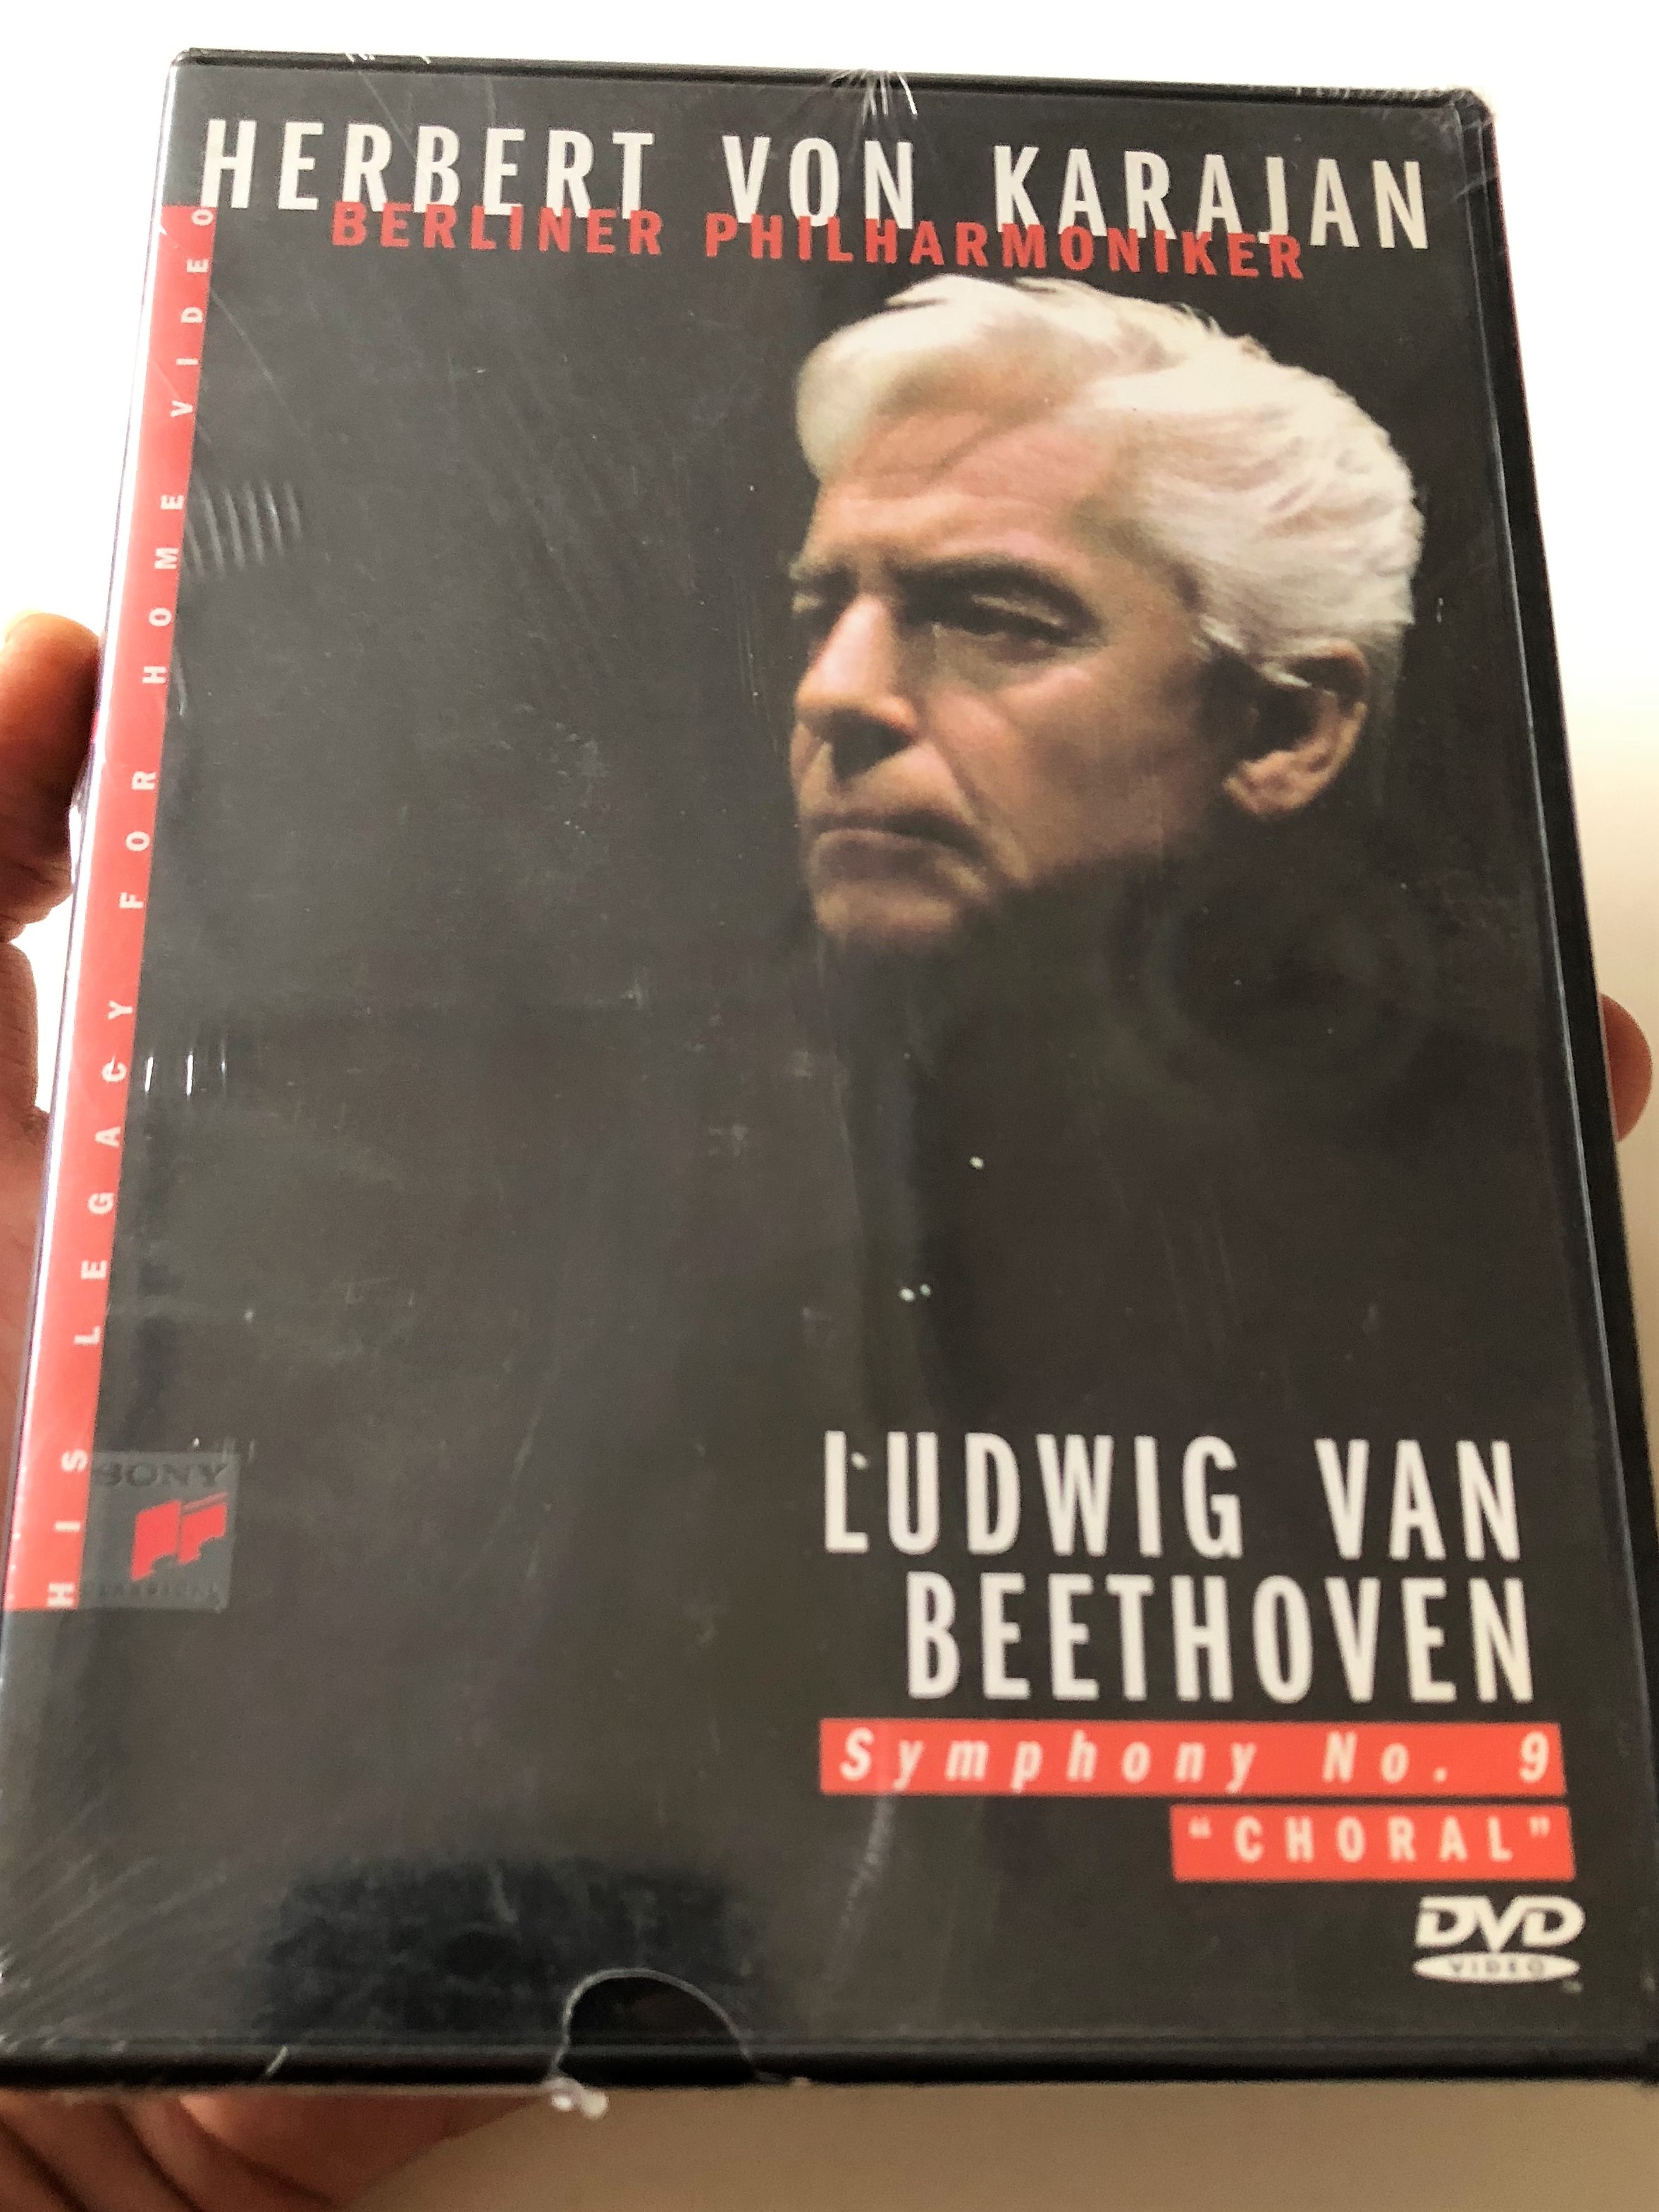 herbert-von-karajan-beethoven-symphonies-no-9-choral-1-.jpg